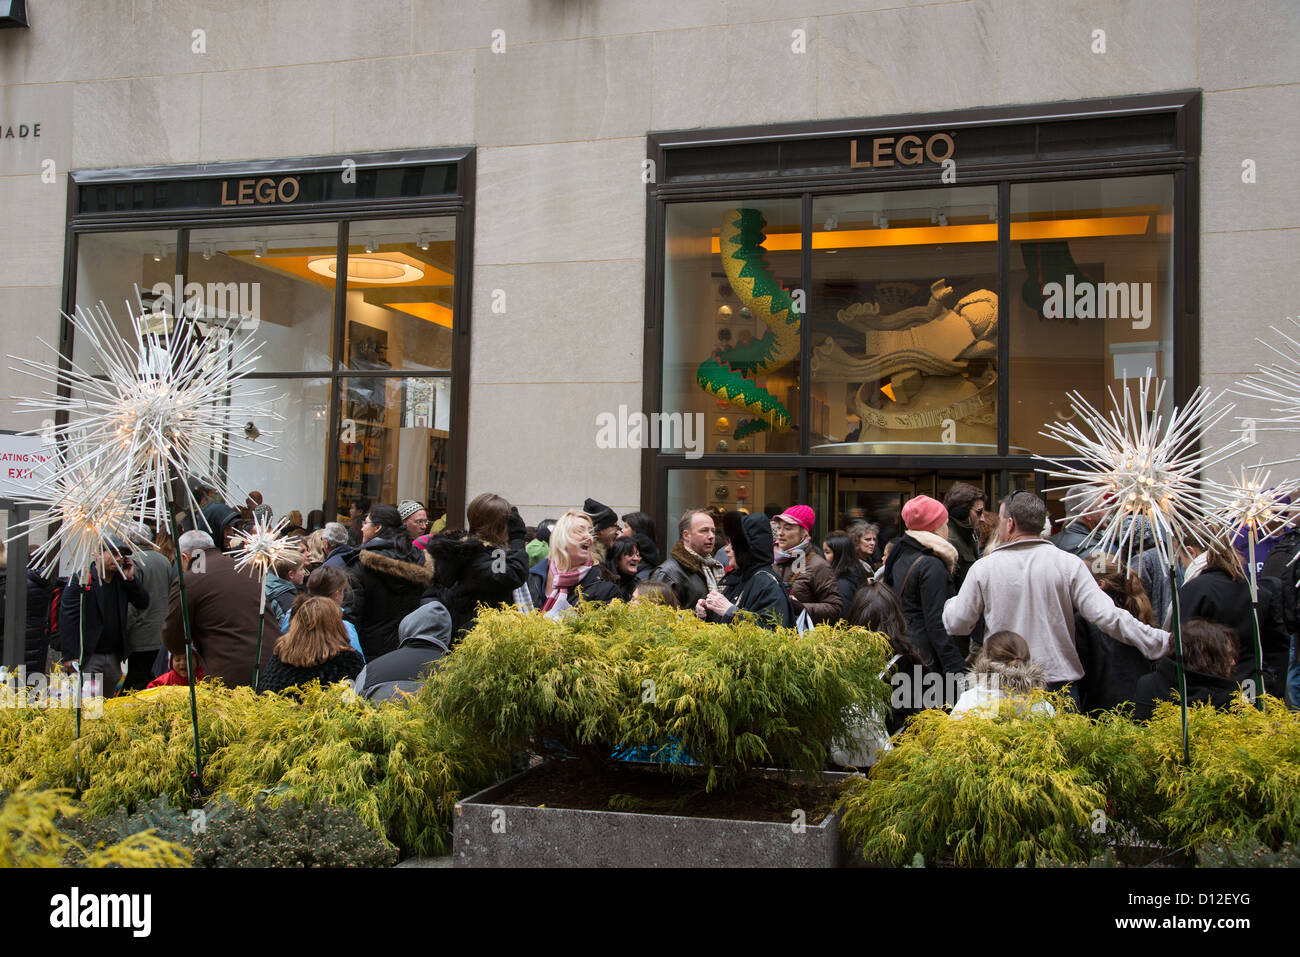 La foule à l'extérieur de l'avant Noël magasin Lego dans le Rockefeller Center, New York USA Banque D'Images